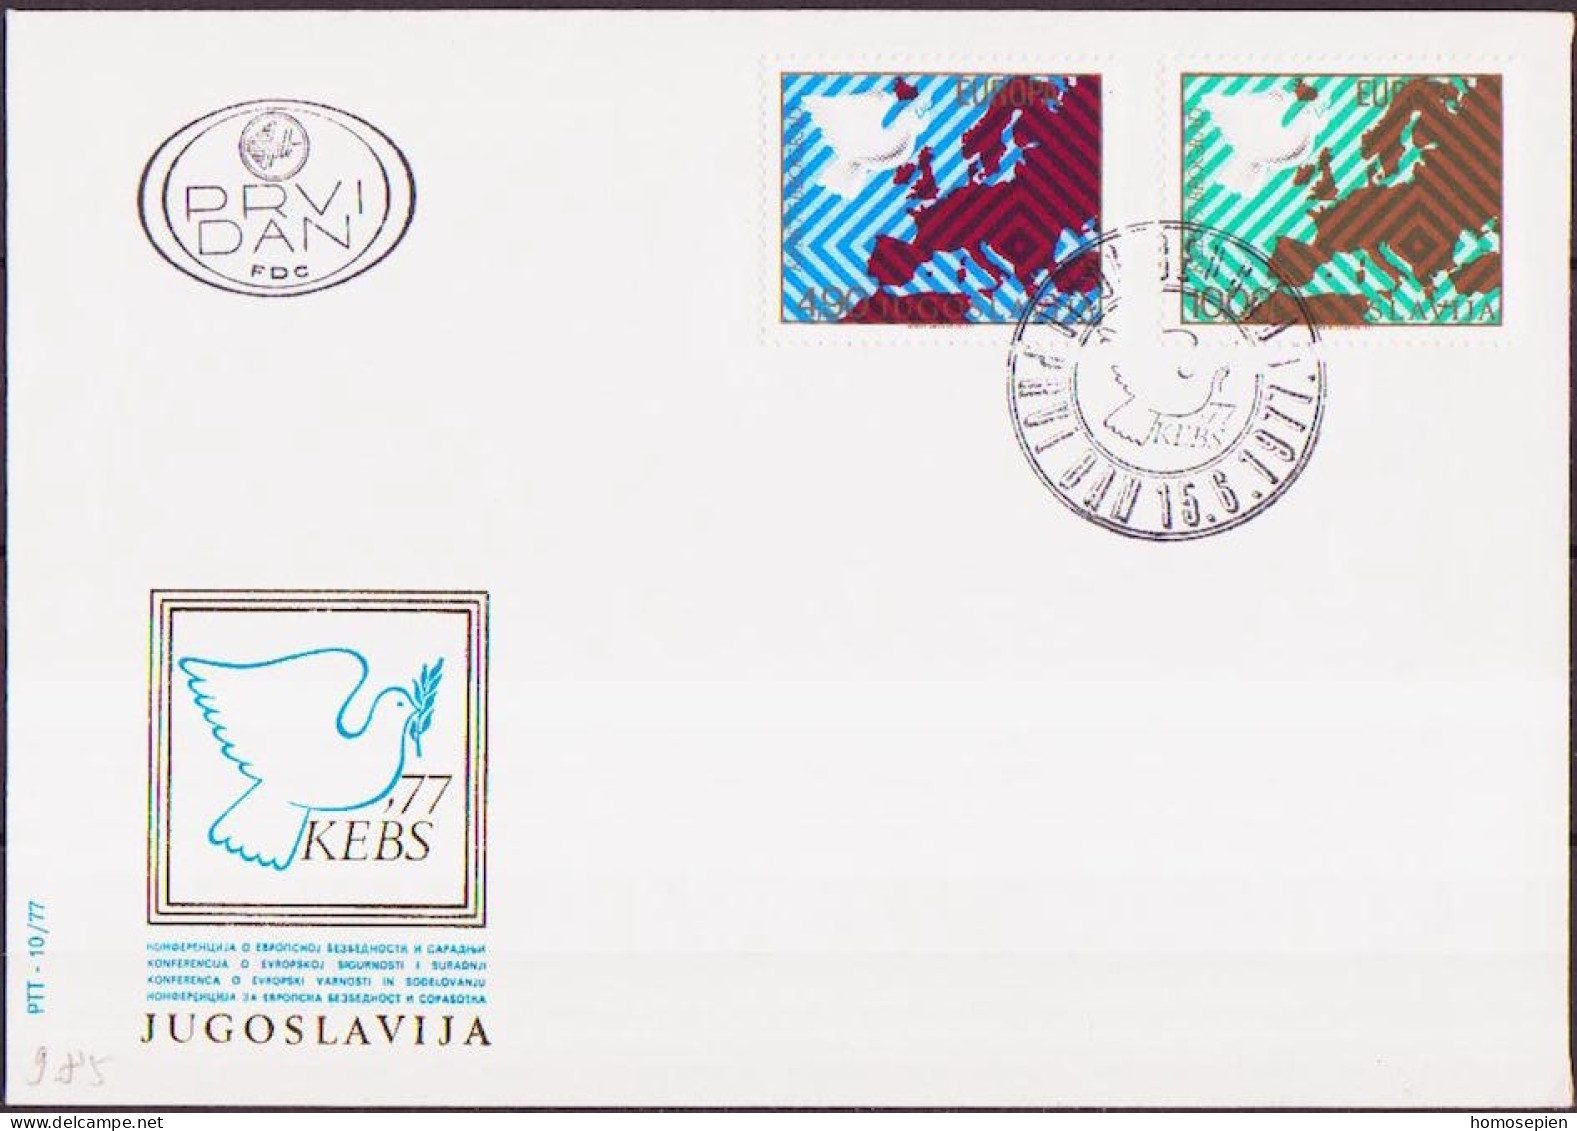 Yougoslavie - Jugoslawien - Yugoslavia FDC 1977 Y&T N°1580 à 1581 - Michel N°1692 à 1693 - EUROPA - FDC